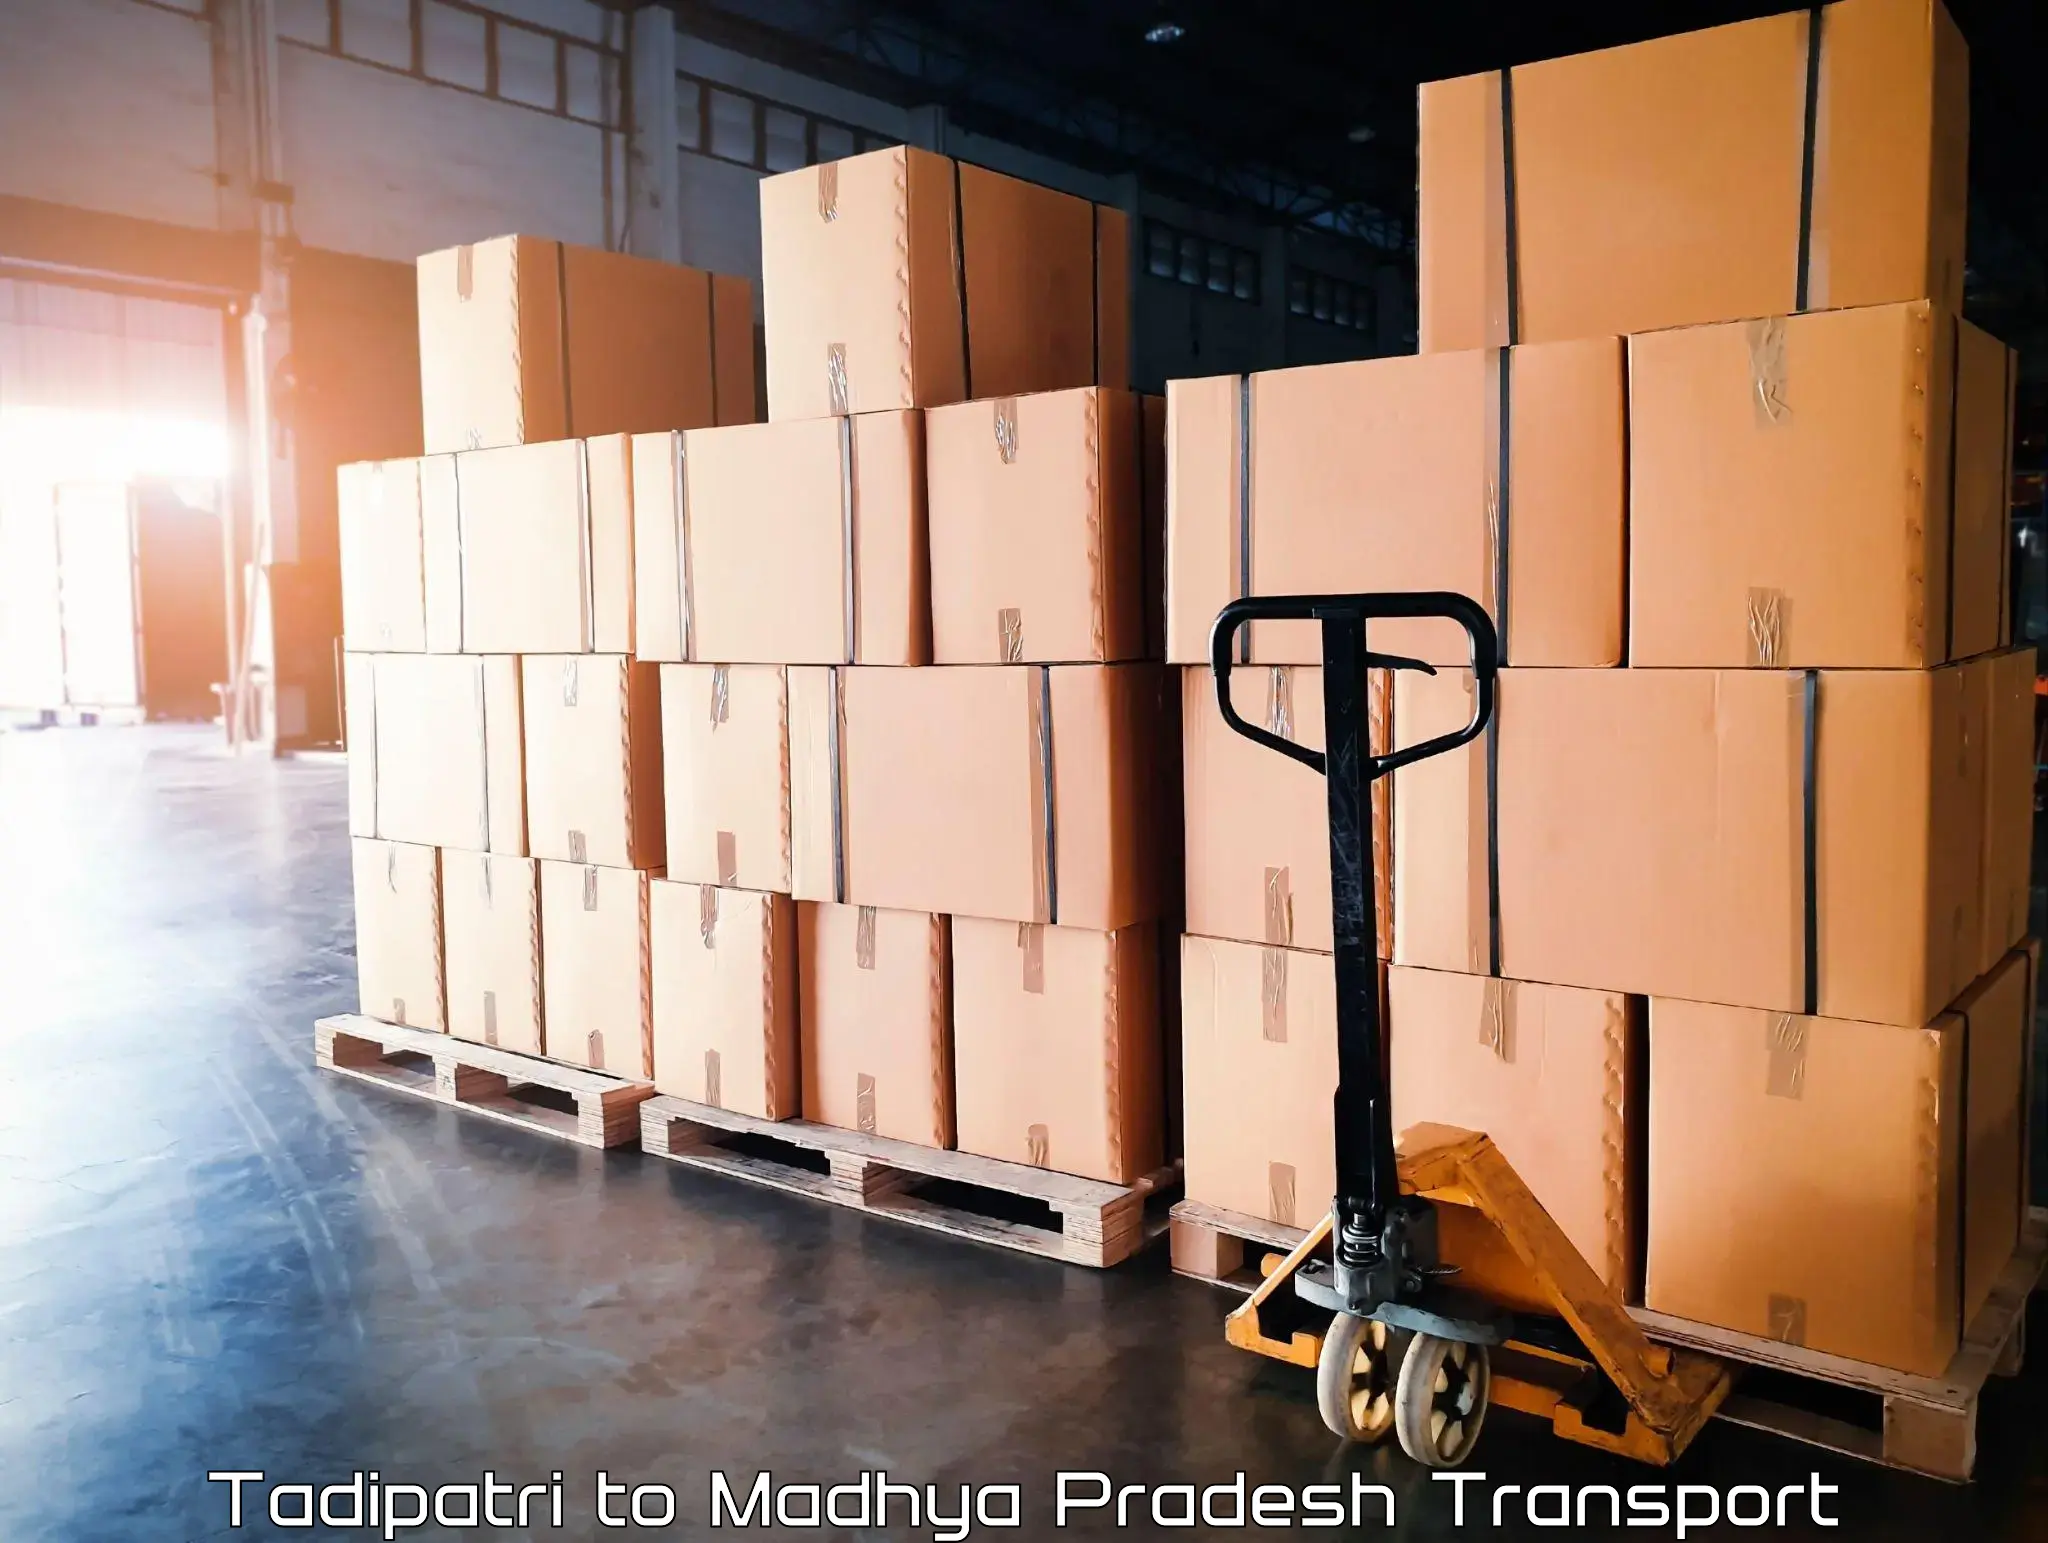 Transport in sharing Tadipatri to Madhya Pradesh